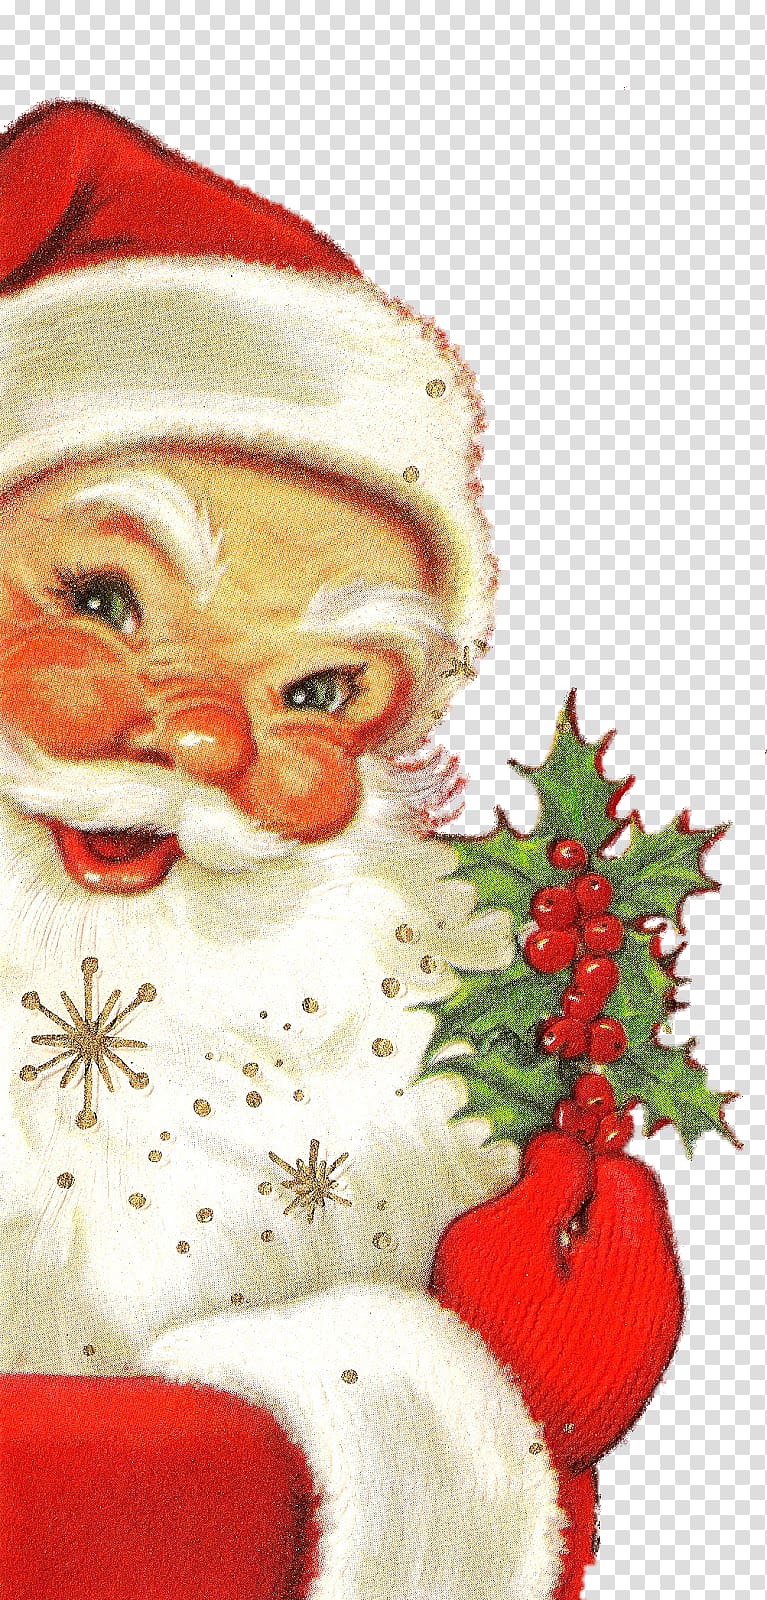 Santa Claus Christmas ornament Christmas card Saint Nicholas Day, Saint Nicholas transparent background PNG clipart